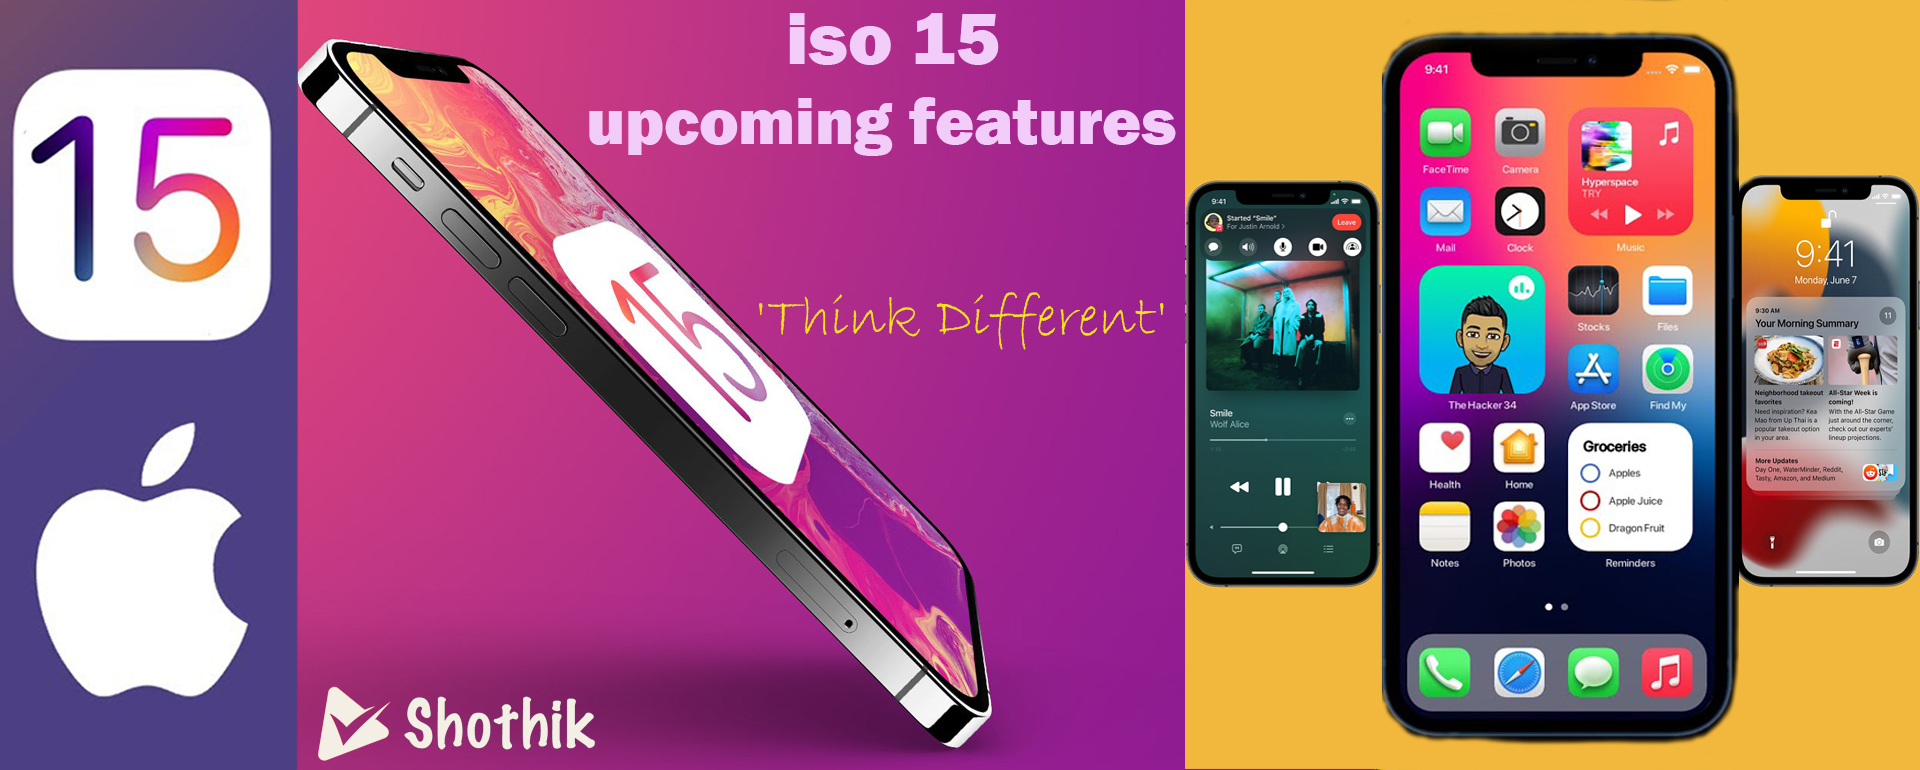 iso 15 new looks